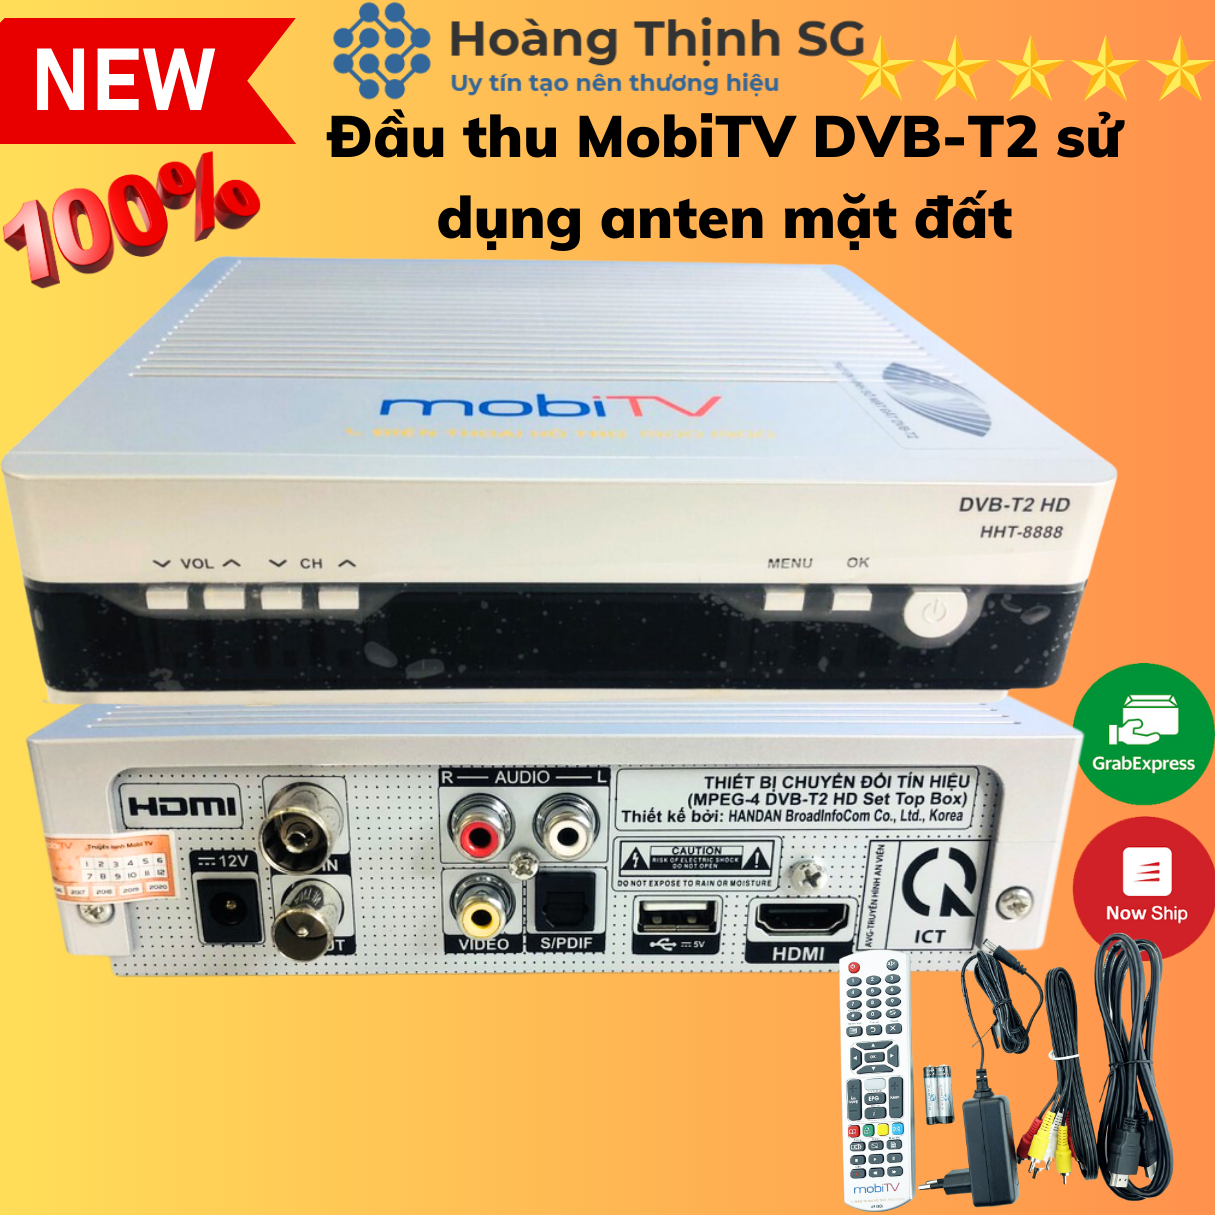 Đầu thu MobiTV DVB-T2 sử dụng anten mặt đất